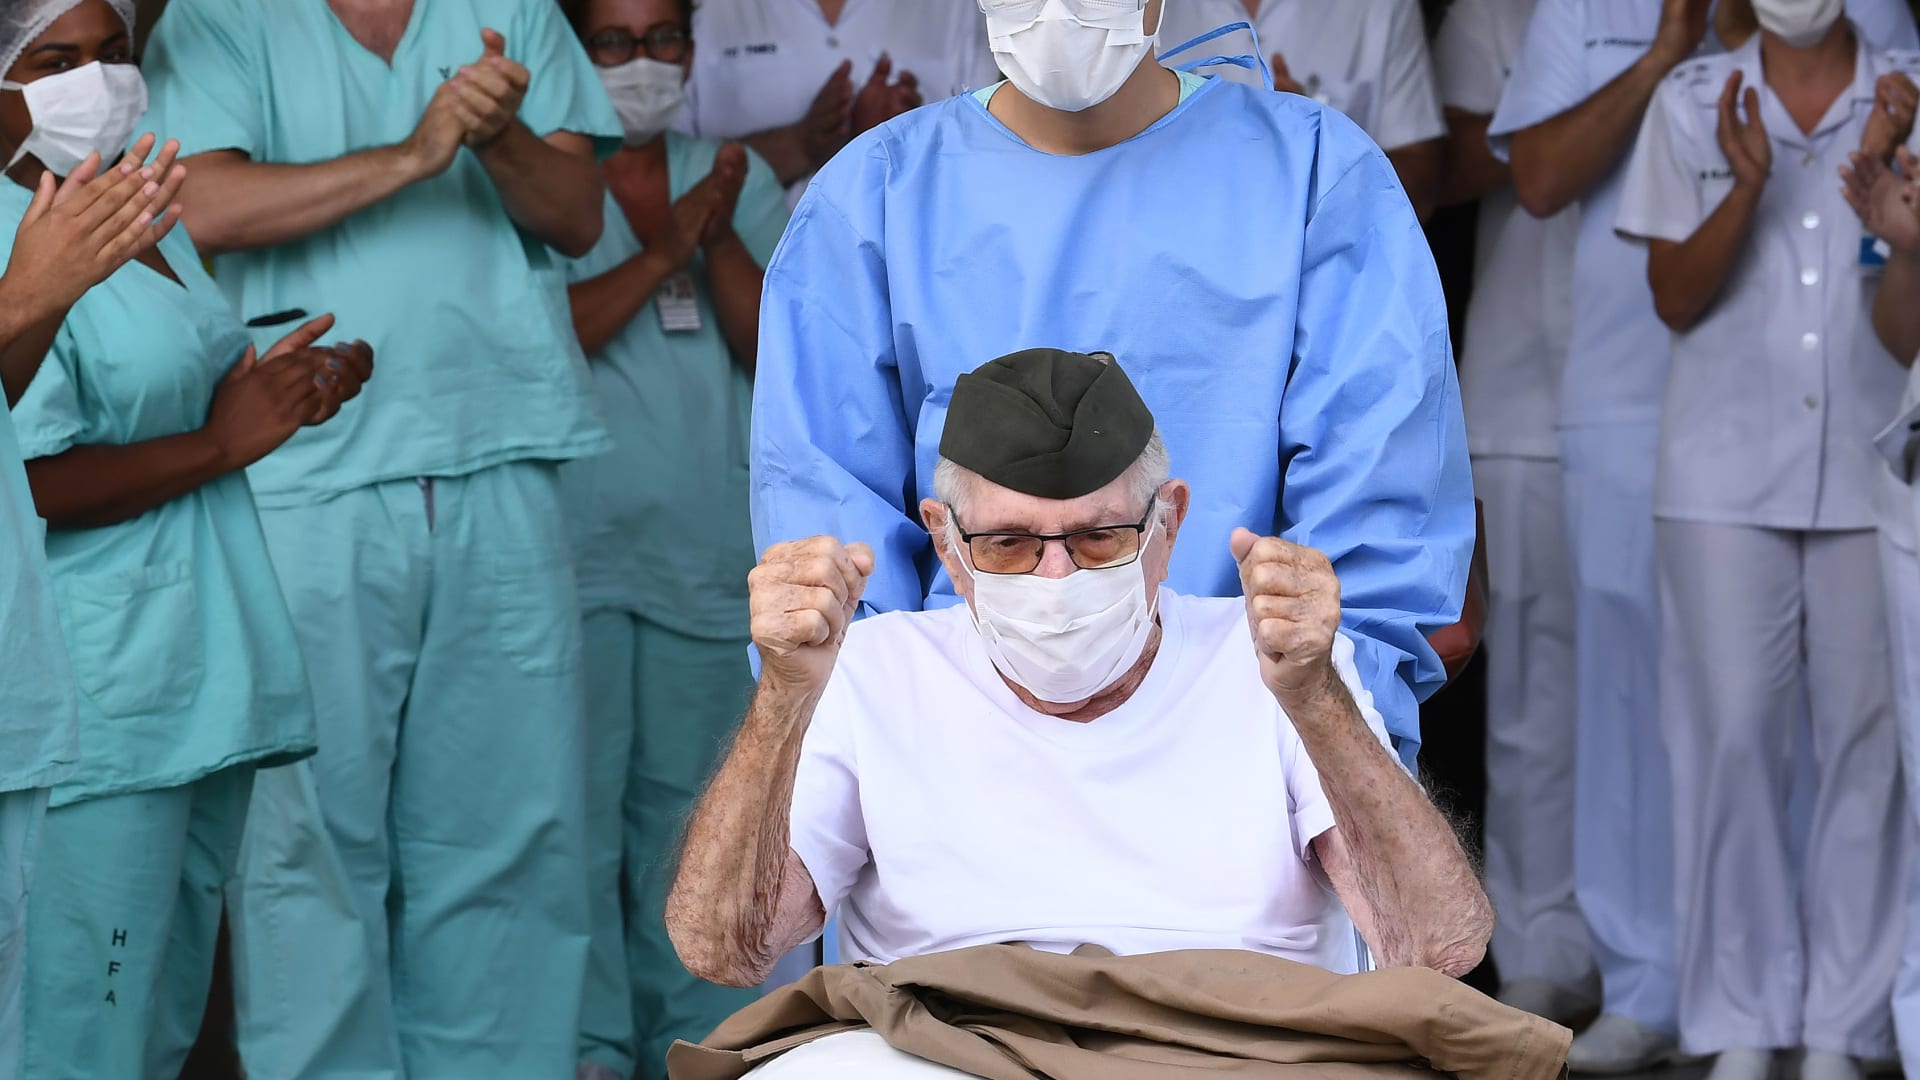 امرأة تبلغ من العمر 97 عاماً تصبح أكبر ناجية من فيروس كورونا في البرازيل